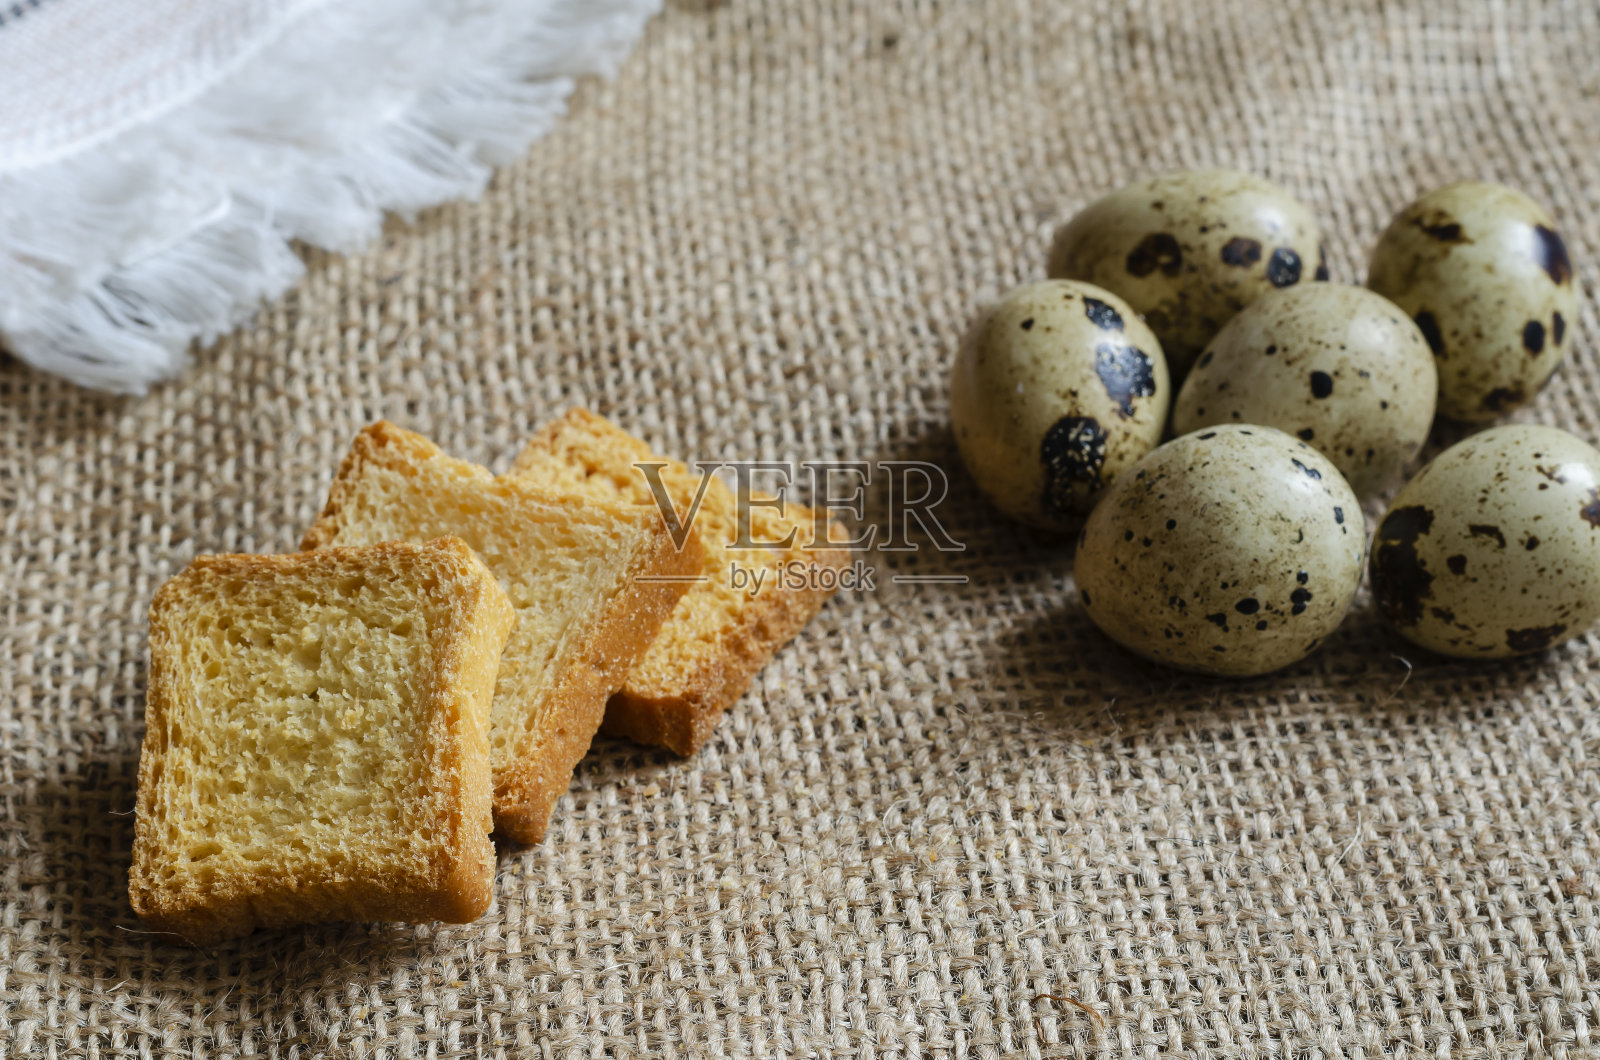 方形面包丁和生鹌鹑蛋放在粗麻布上。照片摄影图片